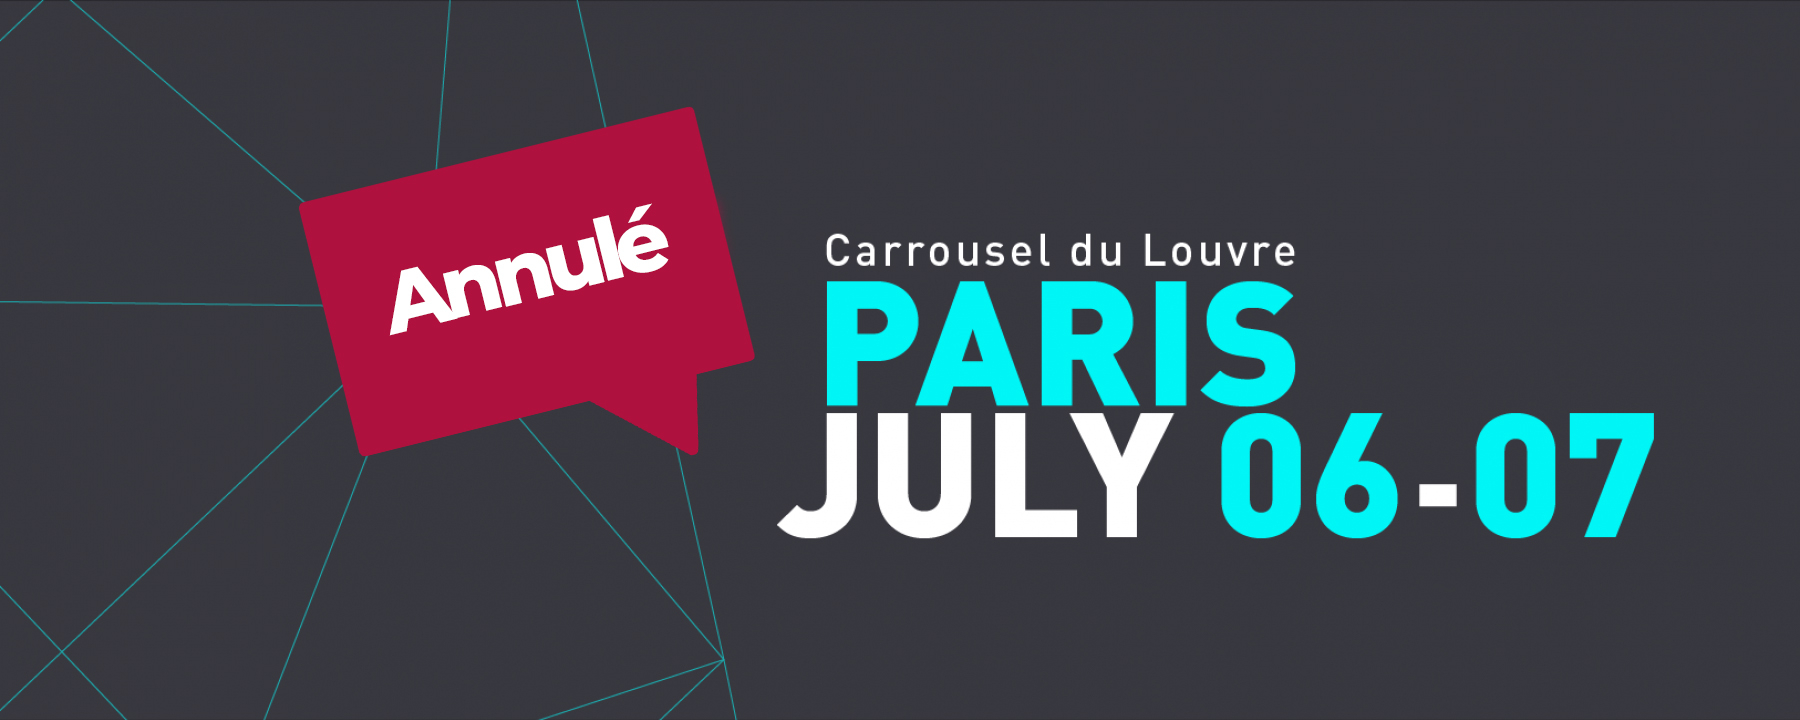 Conférences USI (Unexpected Sources of Inspiration) 2020, au Carrousel du Louvre, les 6&7 juillet 2020, organisé par OCTO Technology